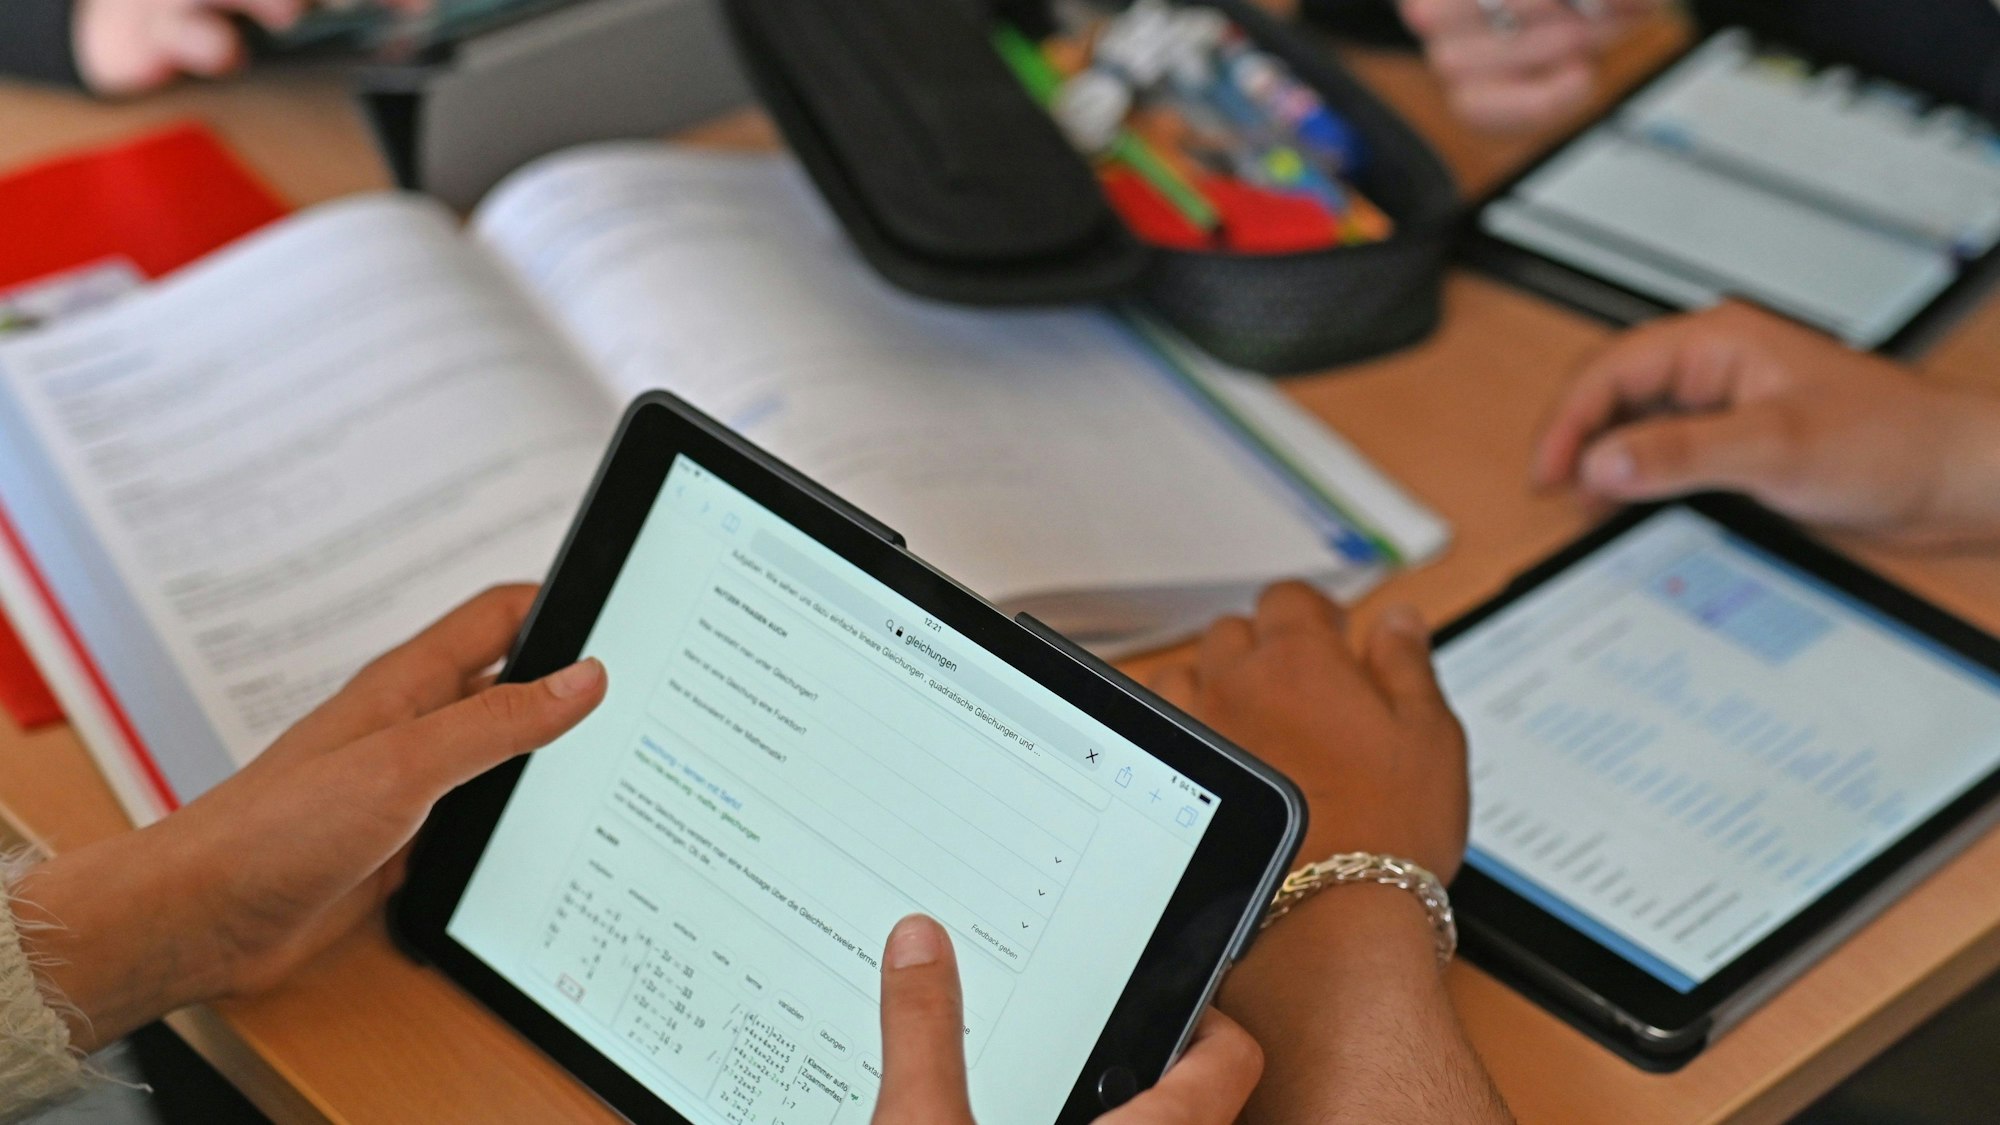 Eine Schülergruppe arbeitet mit dem iPad.